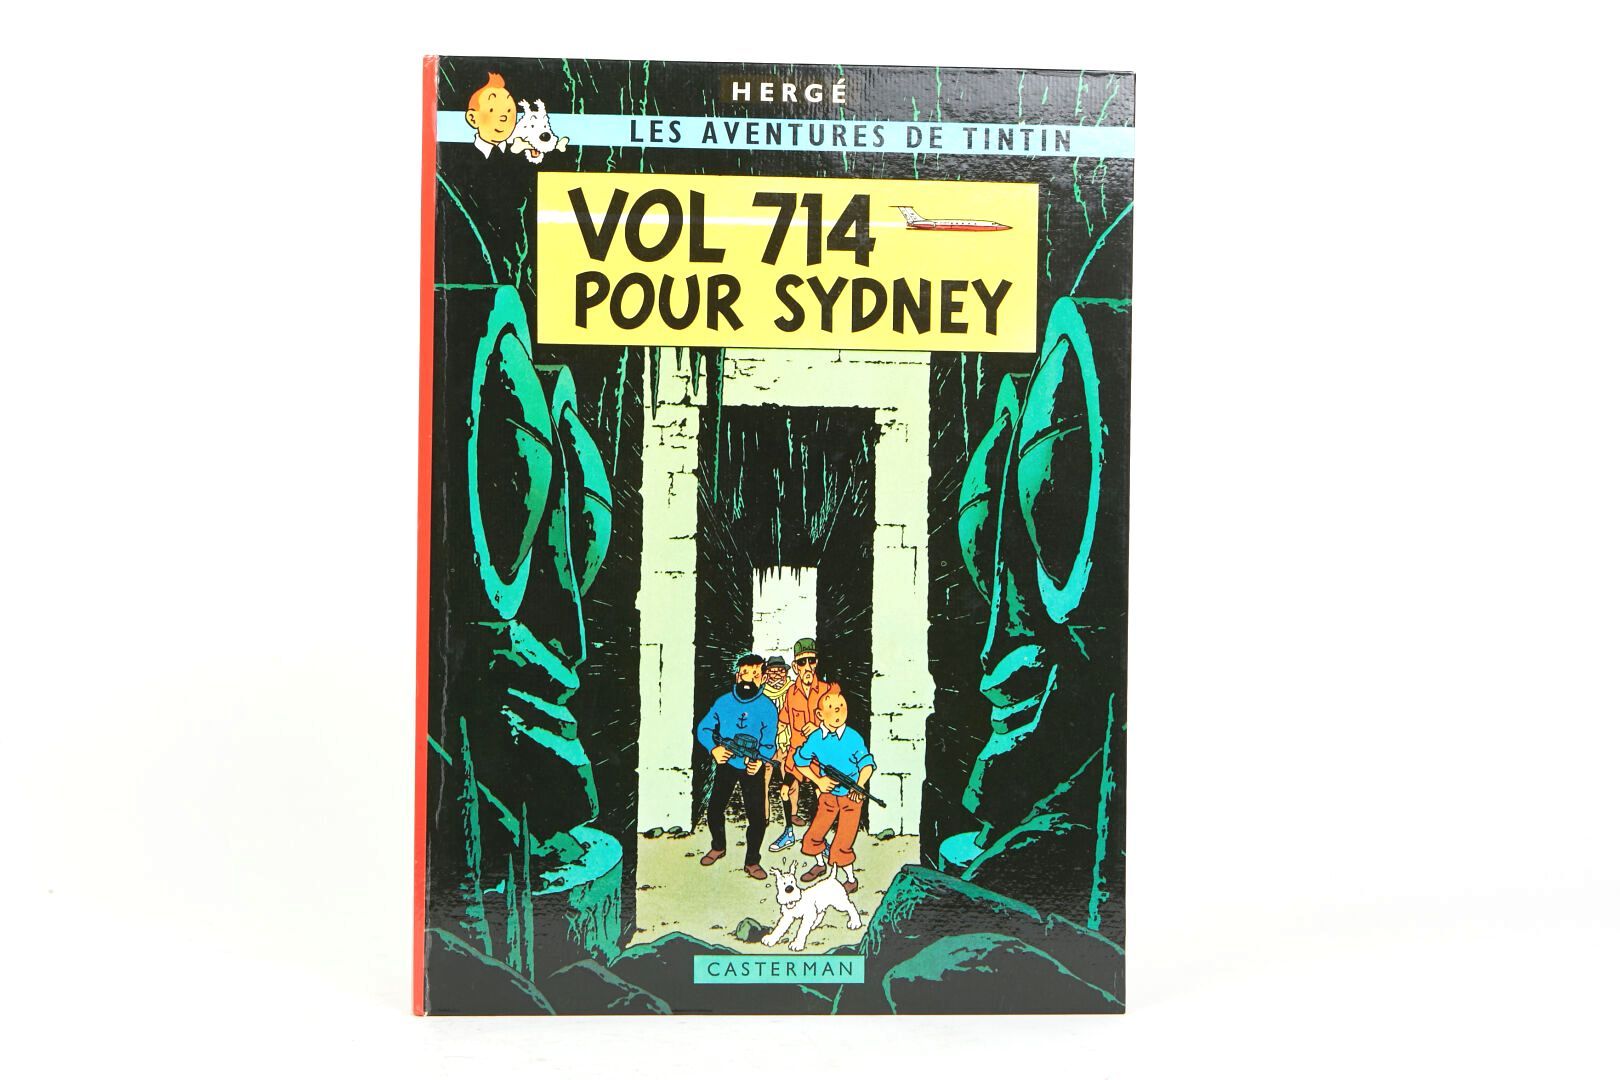 Null "Flug 714 nach Sydney" 1968
Seite 42 "Werden Sie mir sagen, in welcher Räub&hellip;